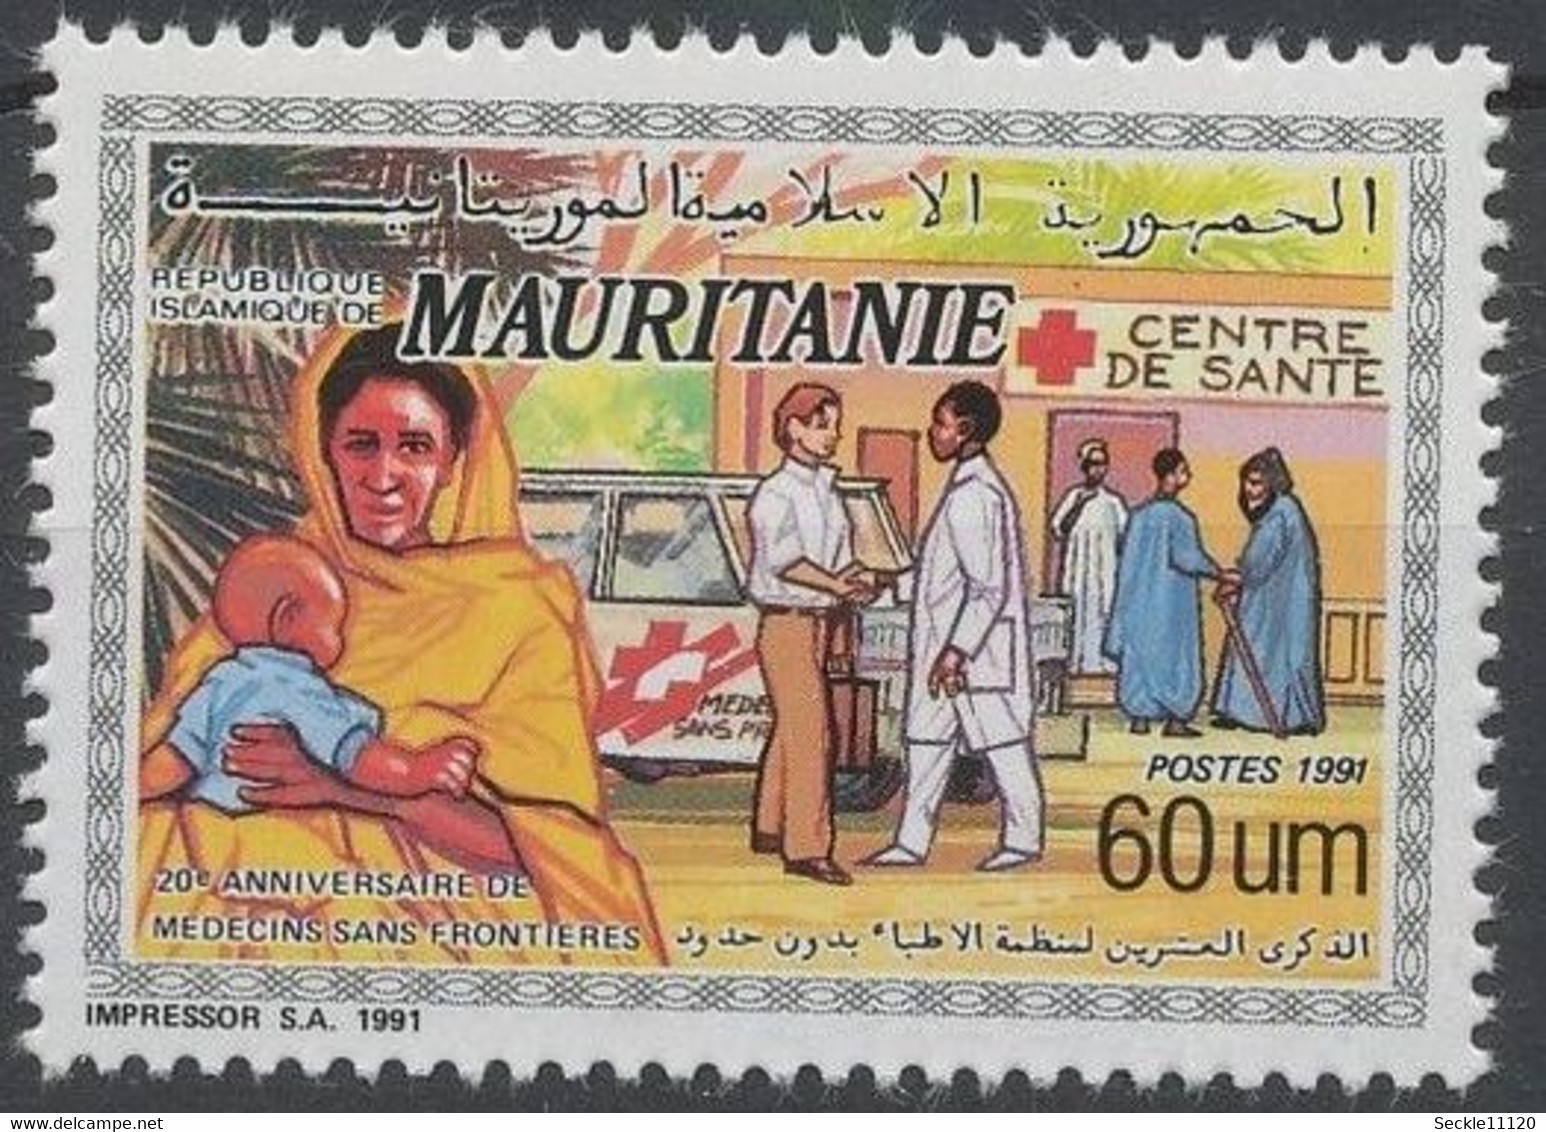 Mauritanie Mauritania - 1991 - 663 - MSF - MNH - Mauritanie (1960-...)